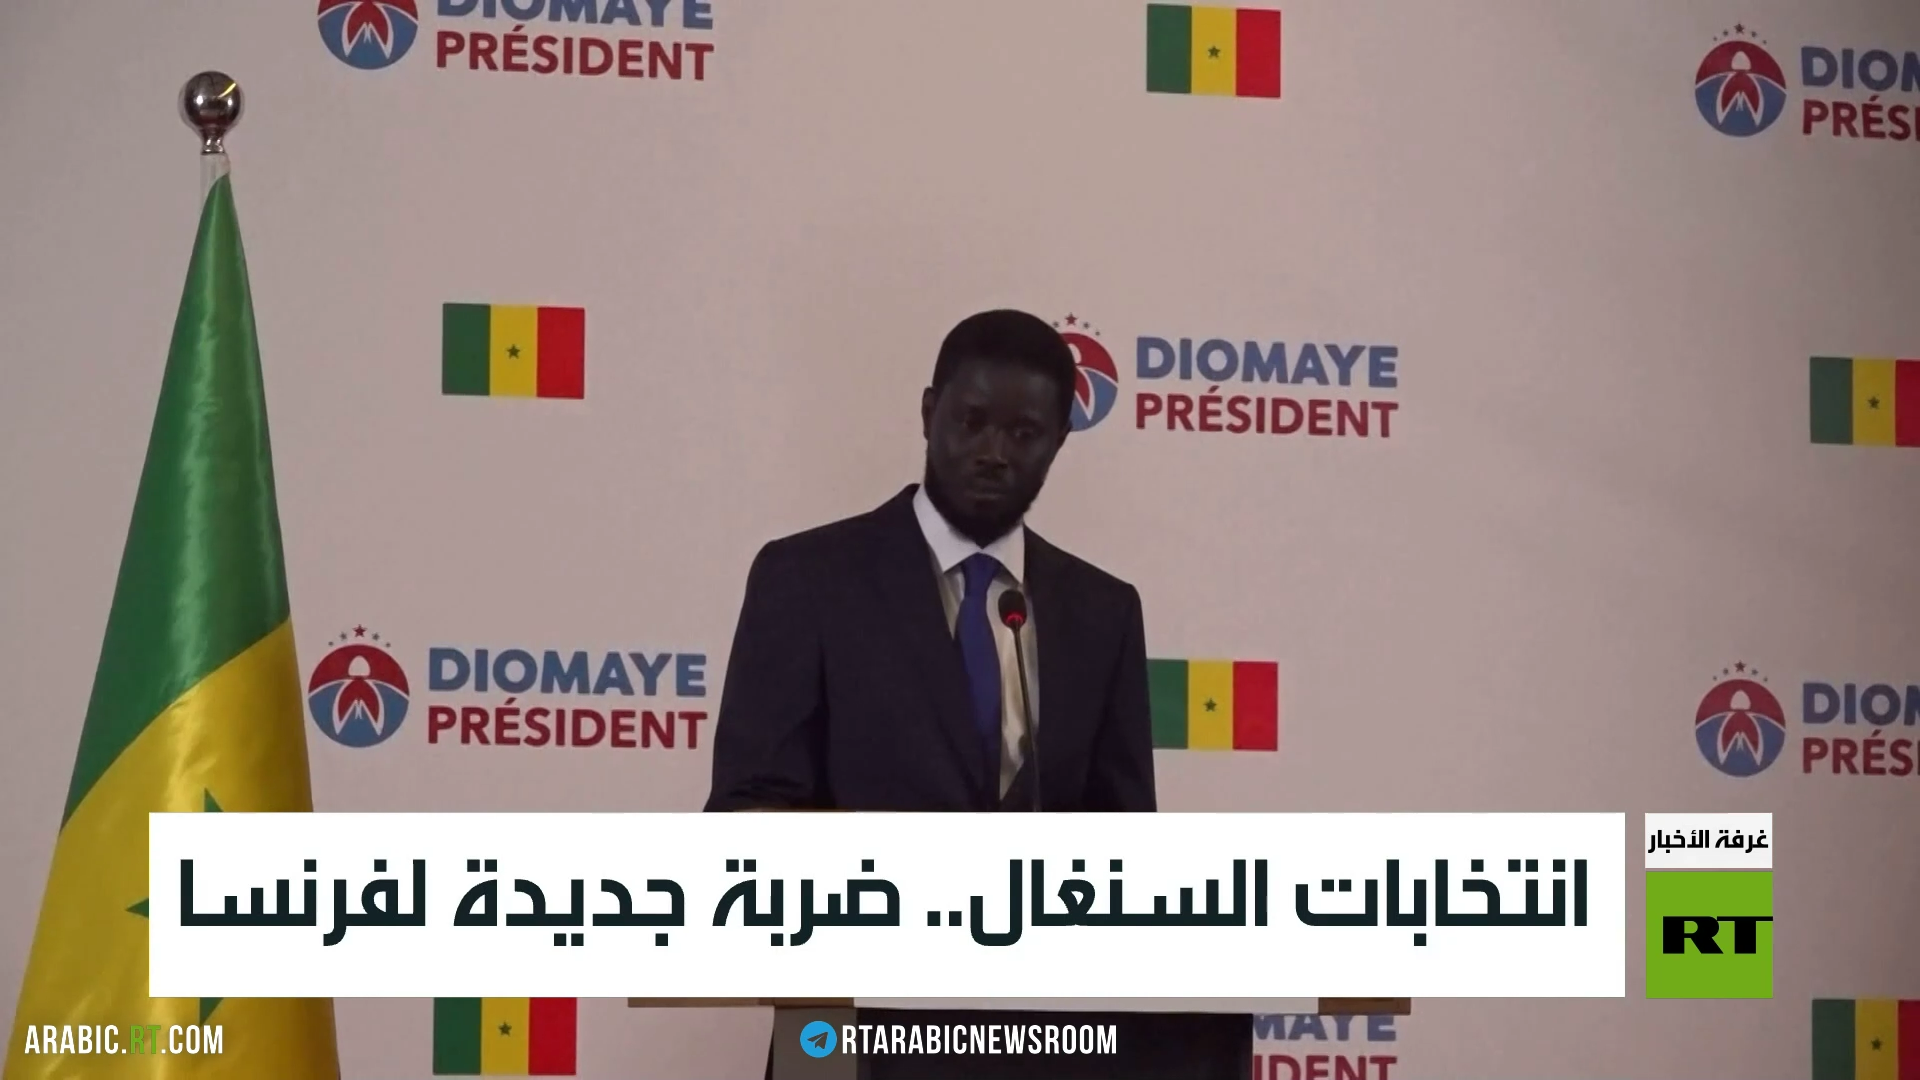 الرئيس السنغالي الجديد يعين أبرز داعميه في الانتخابات رئيسا للوزراء